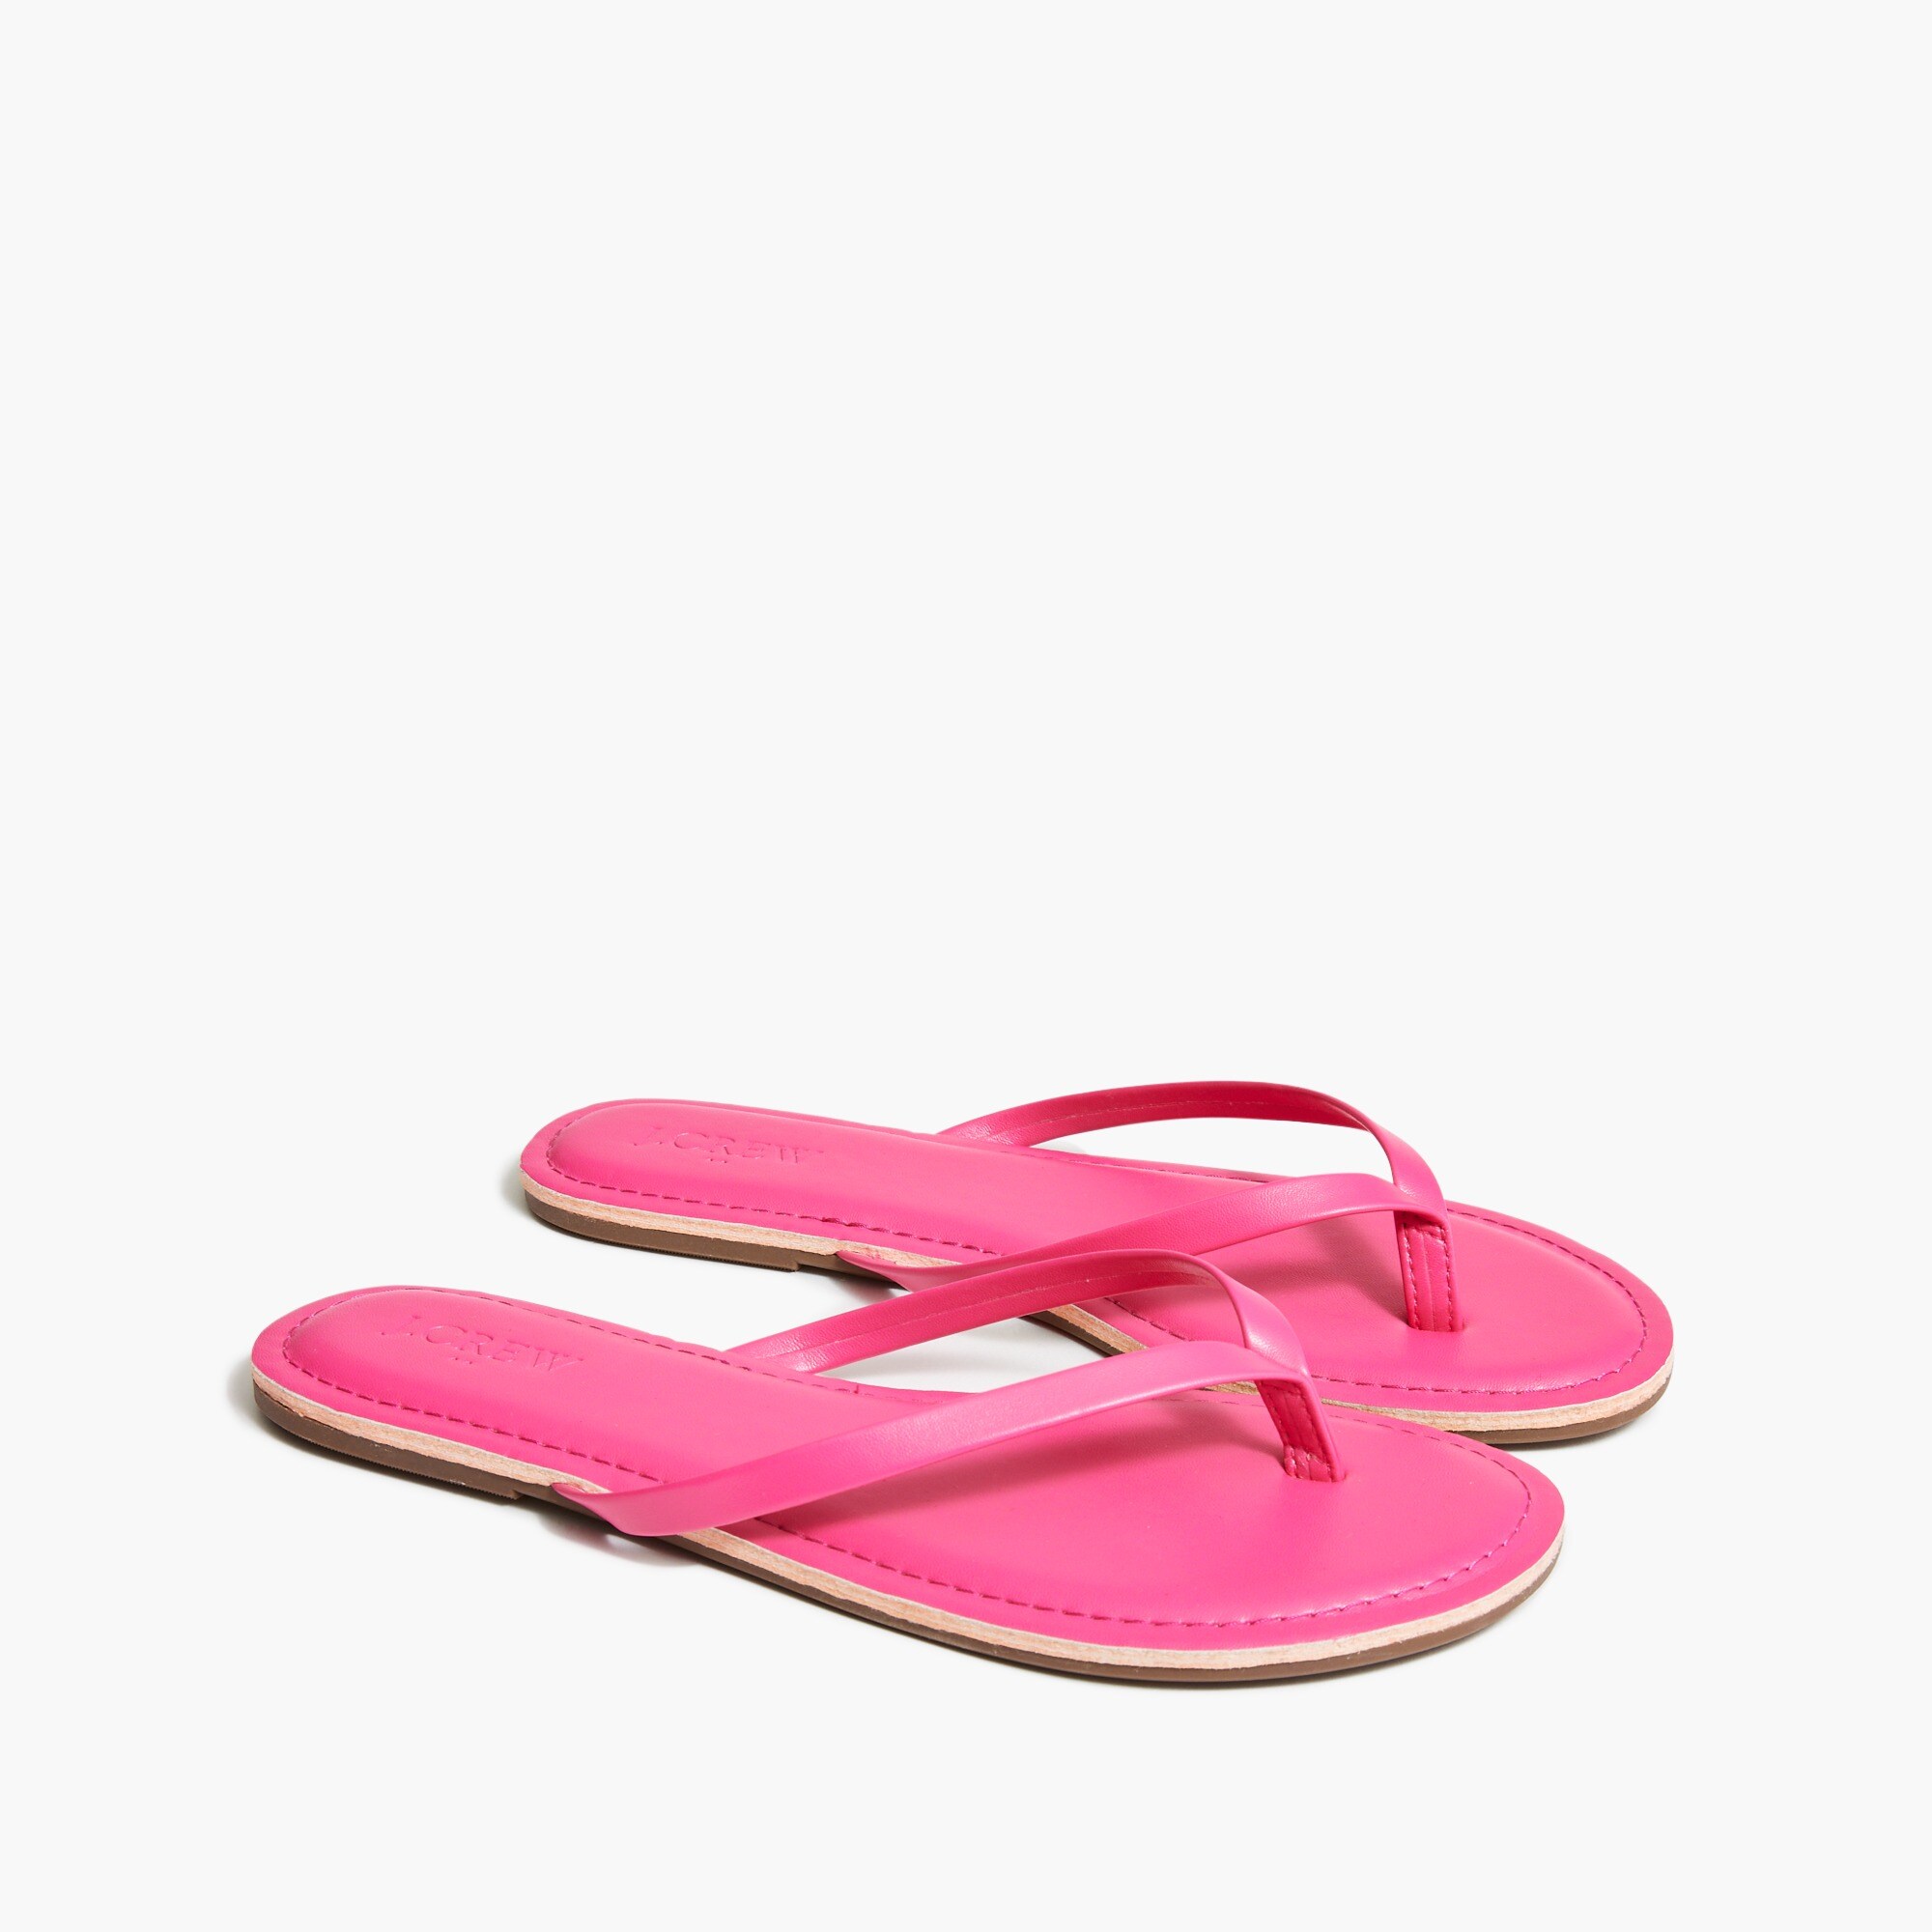 womens Easy summer flip-flops